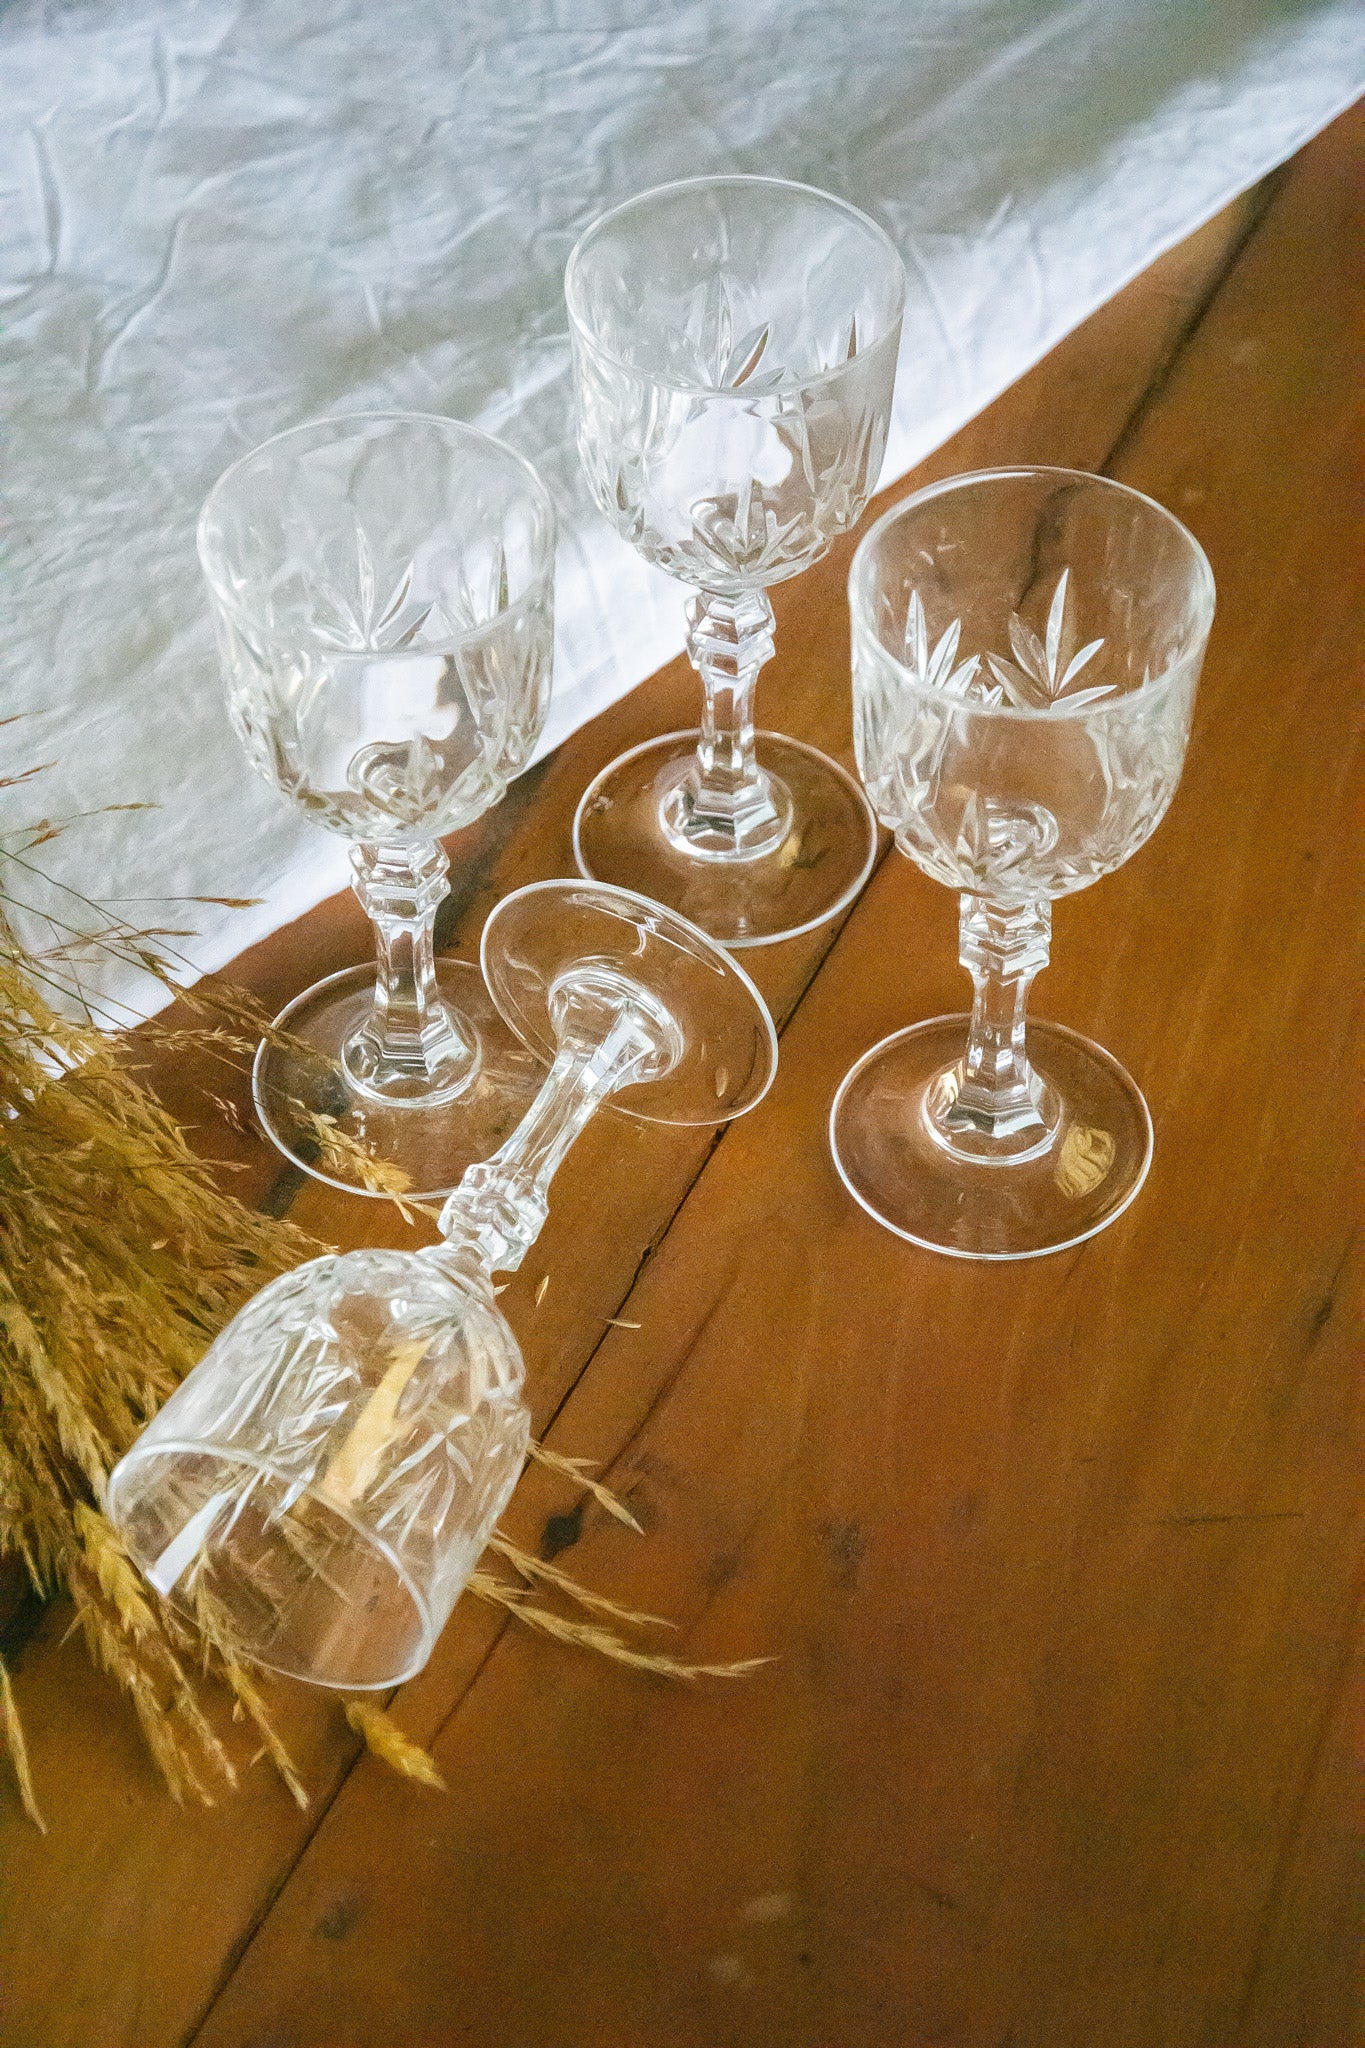 4 verres en cristal ciselés, anciens verres à vin mais la contenance correspond mieux à des verres à eau pour une utilisation moderne.